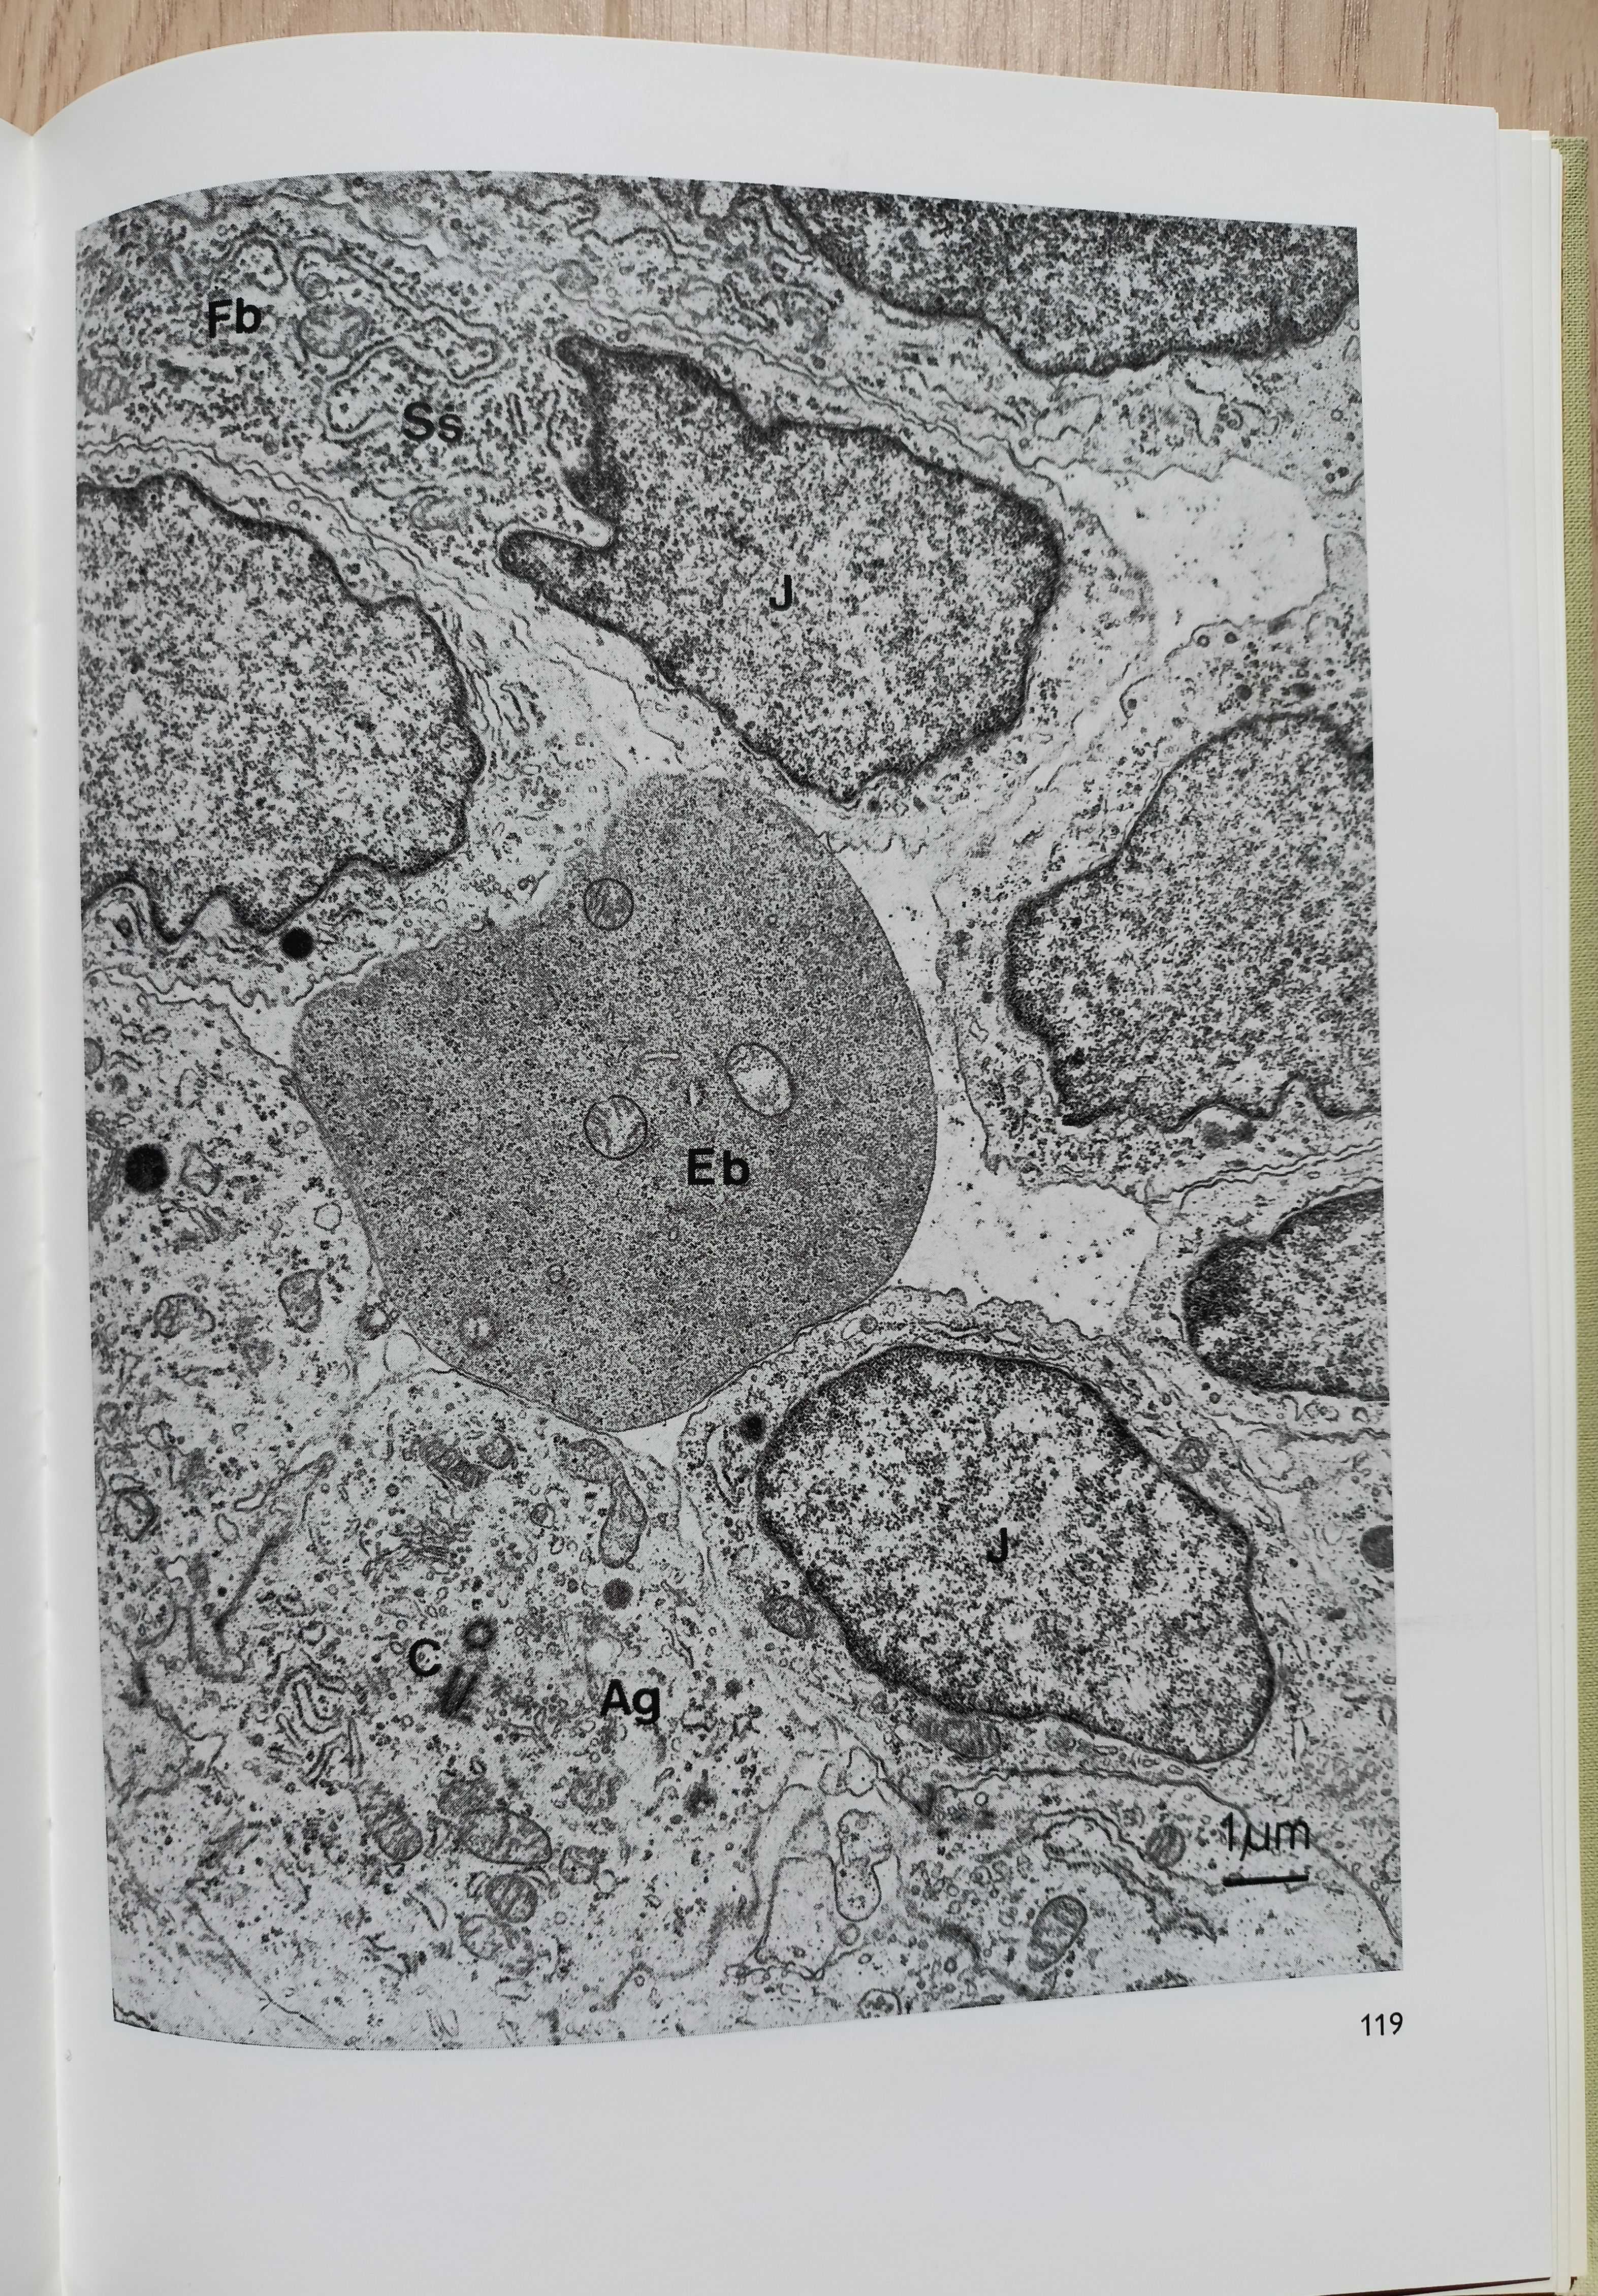 Atlas ultrastruktury komórek kręgowców (A. Jasiński, W. Kilarski)